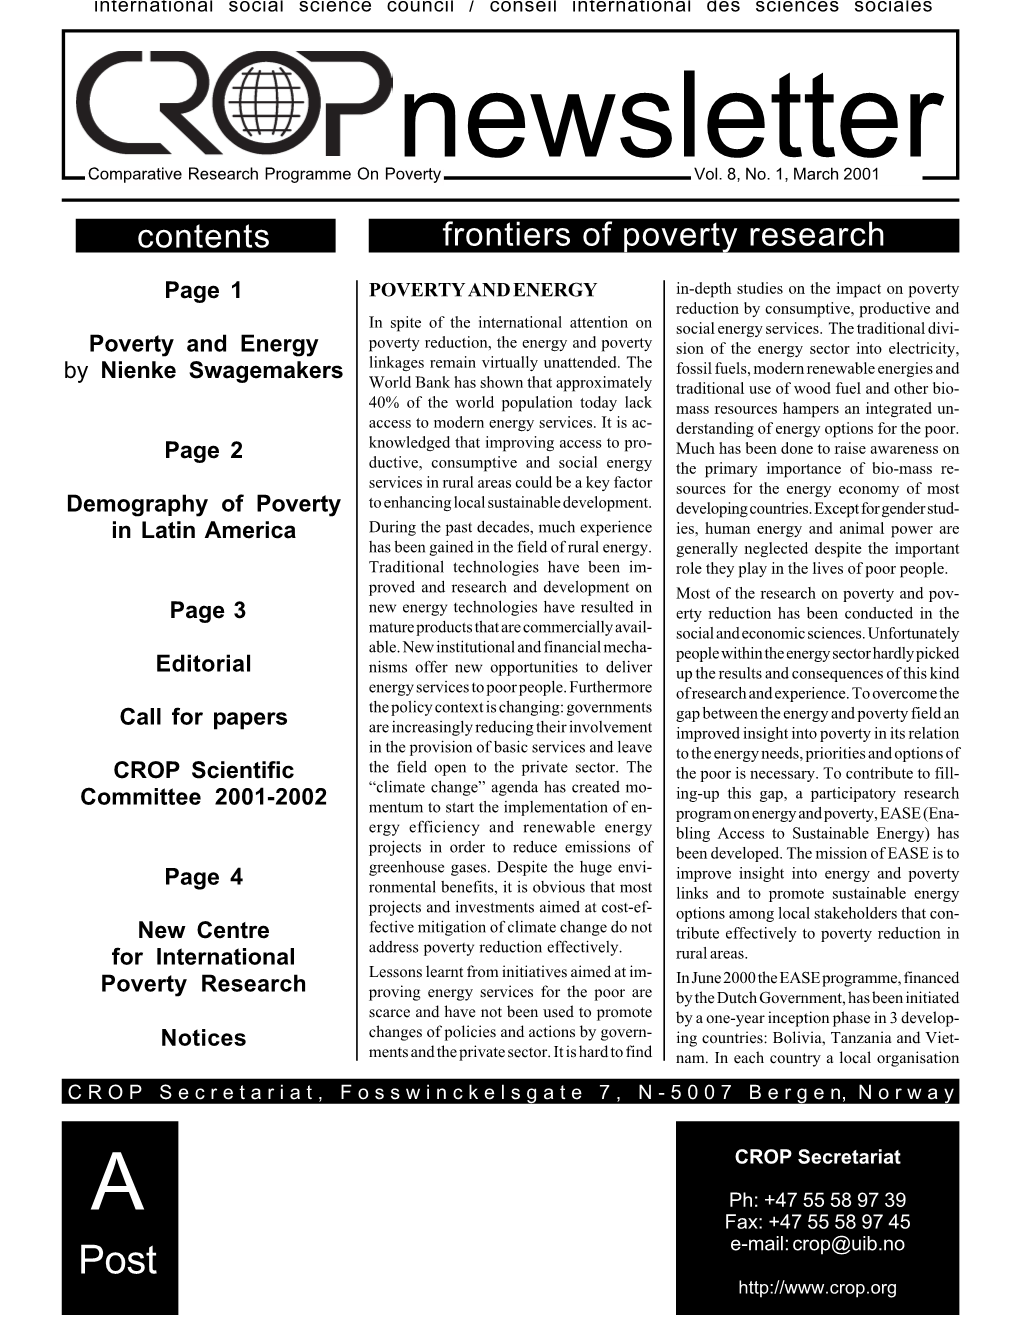 CROP Newsletter Vol.8, No.1, March 2001